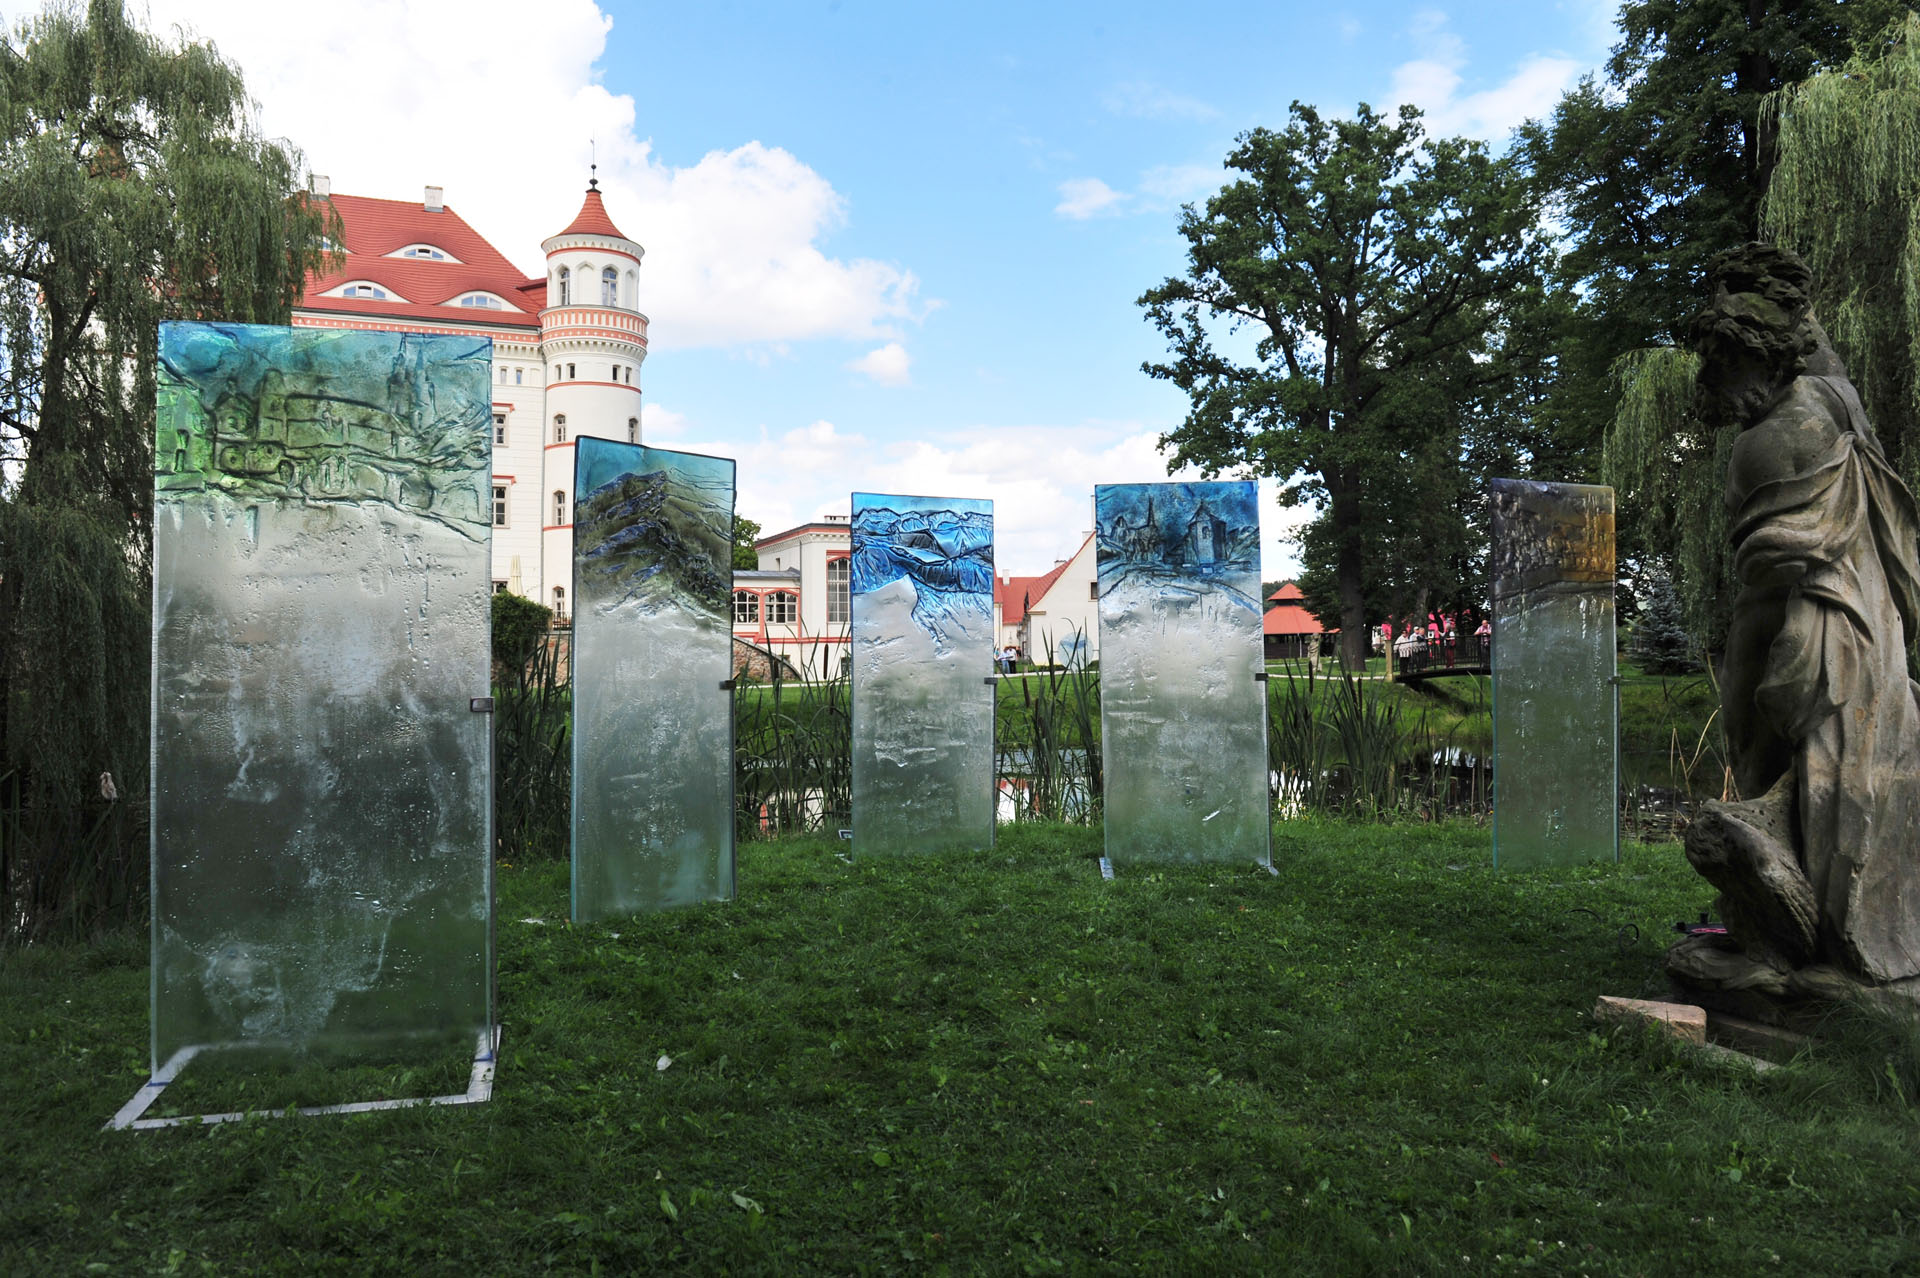 Archiglass Art Glass POZIOM 221215 Wrocław